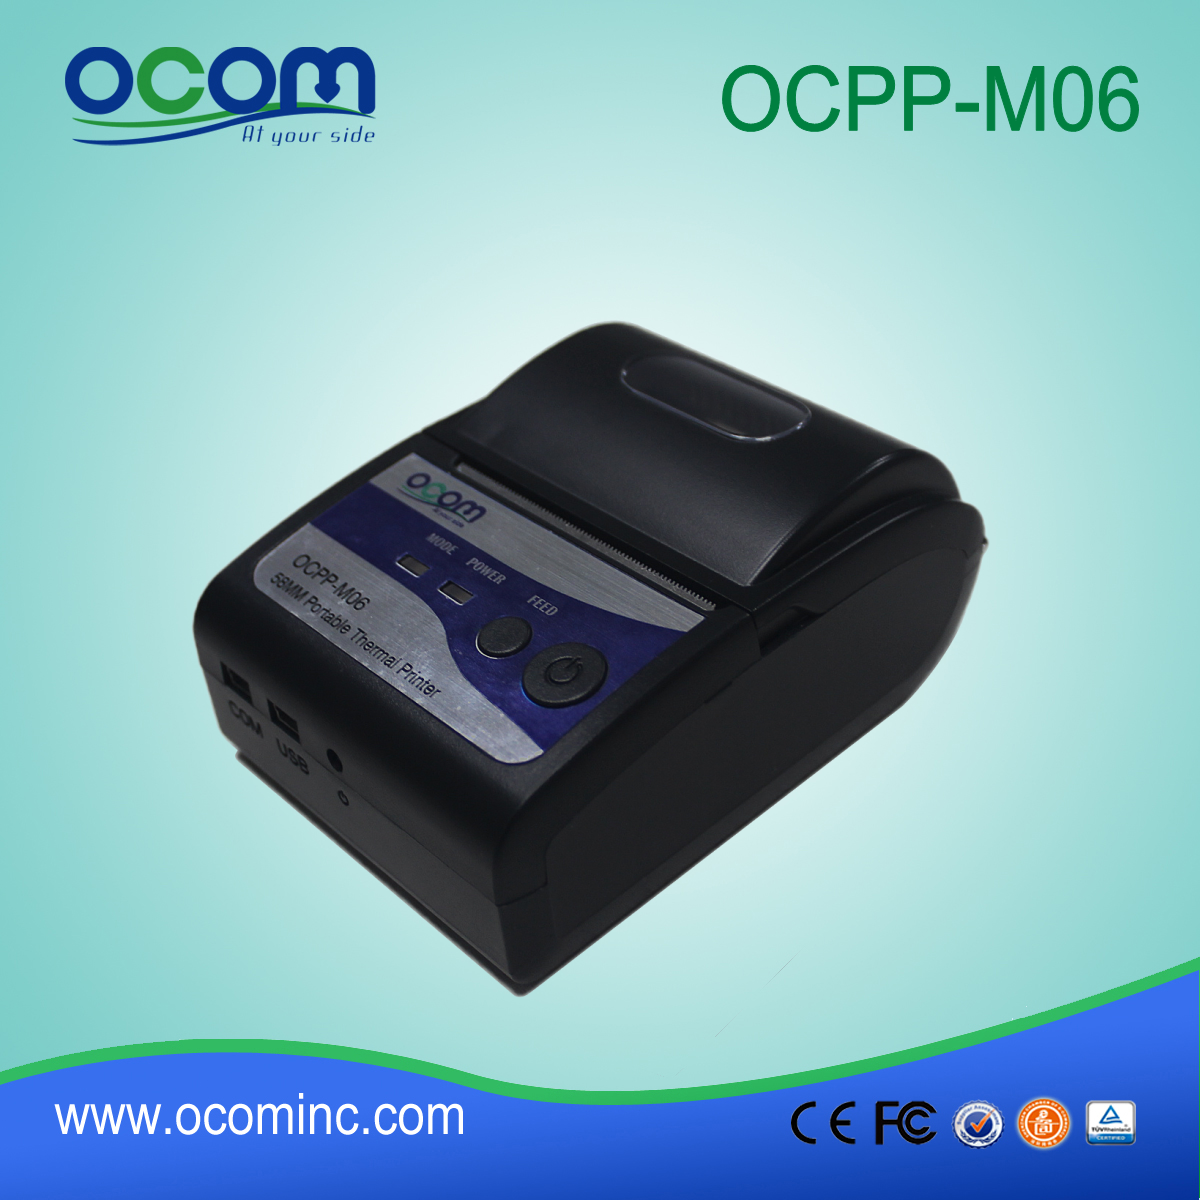 (OCPP-M06) Chiny fabryka OCOM drukarka termiczna odbioru 58mm